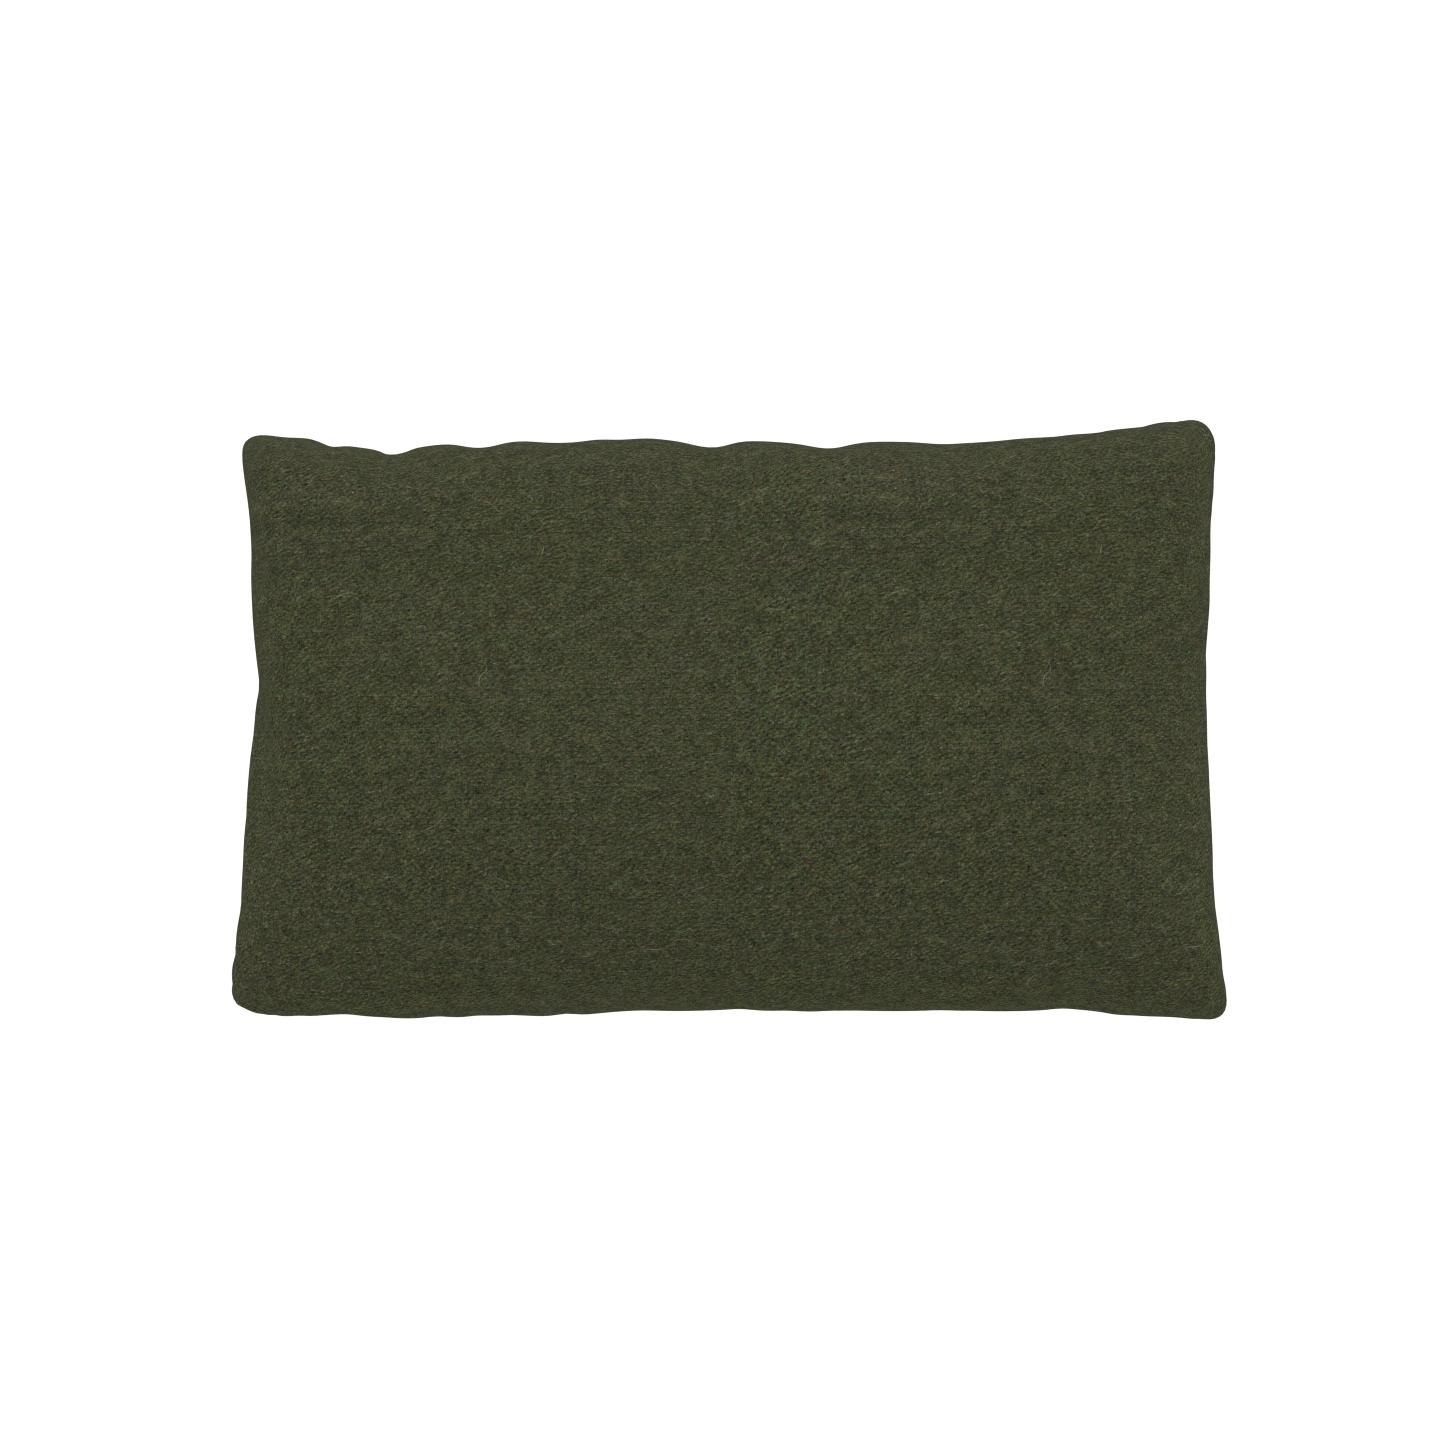 MYCS Coussin Vert Olive - 30x50 cm - Housse en Laine. Coussin de canapé moelleux